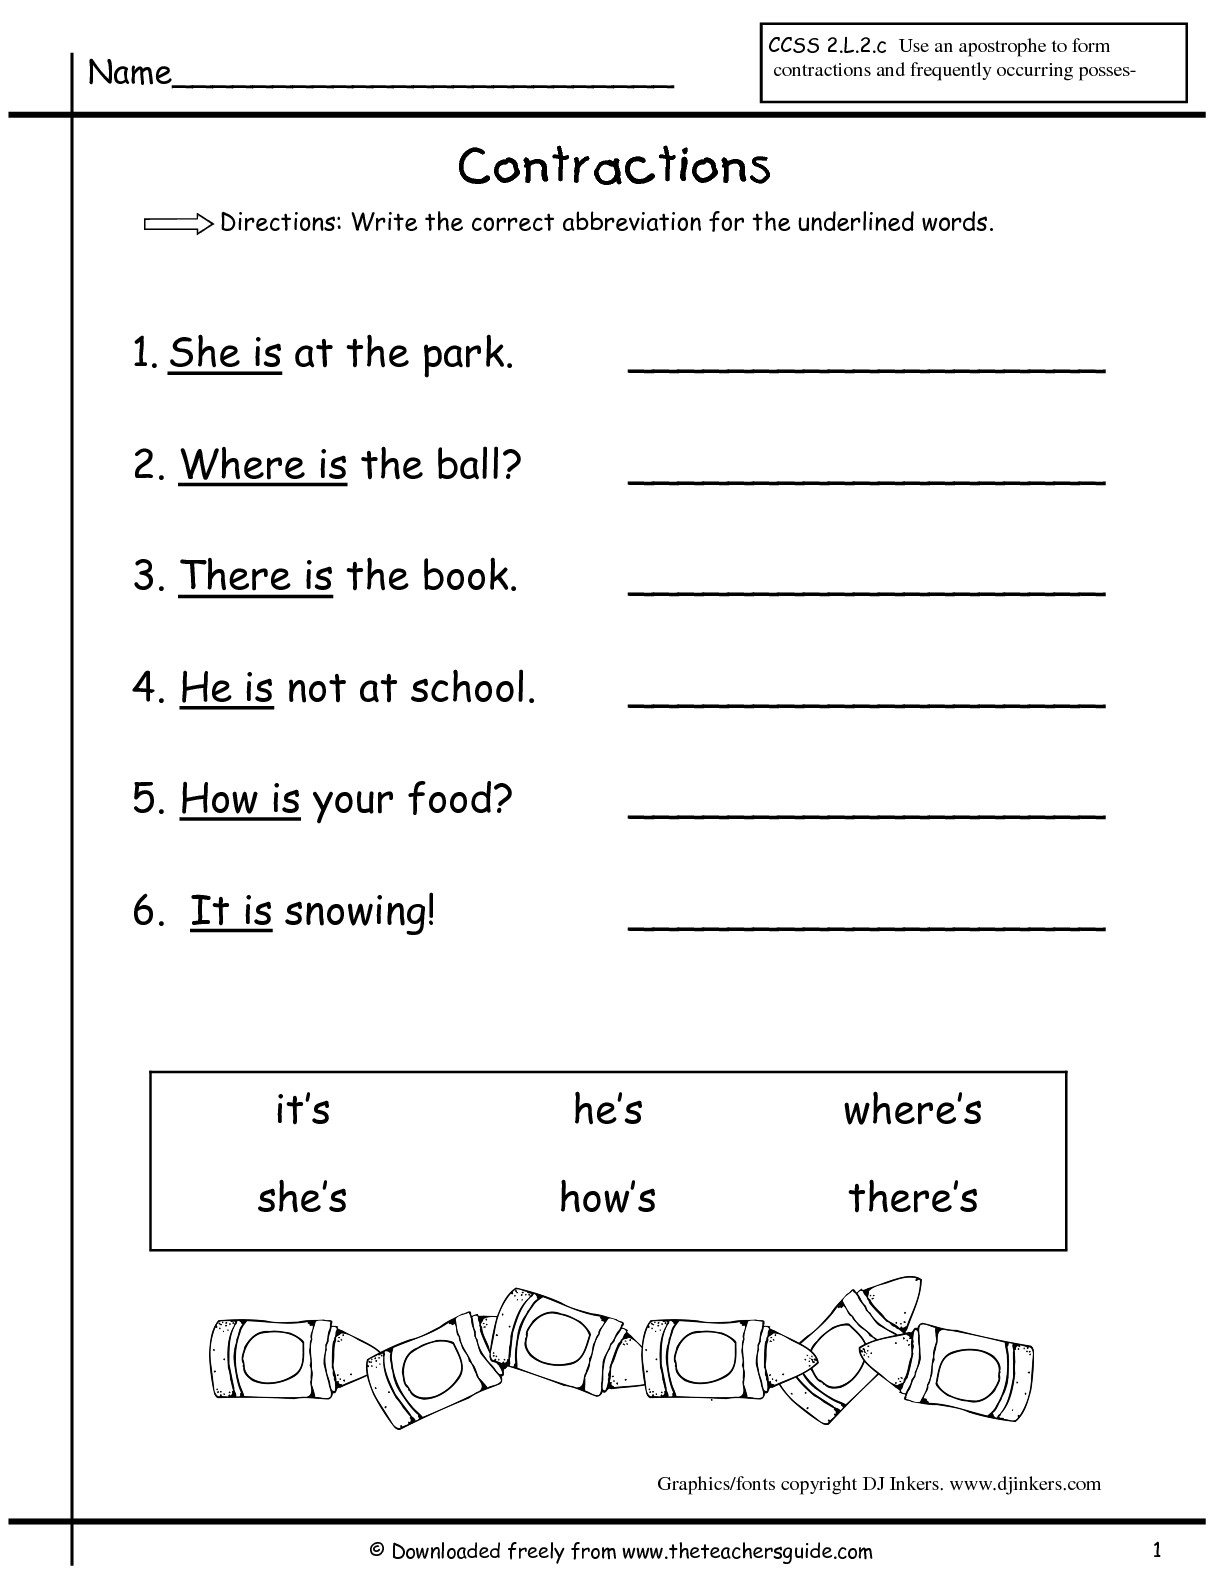 Printables. Social Studies Worksheets For 1St Grade - Social Studies Worksheets First Grade Free Printable